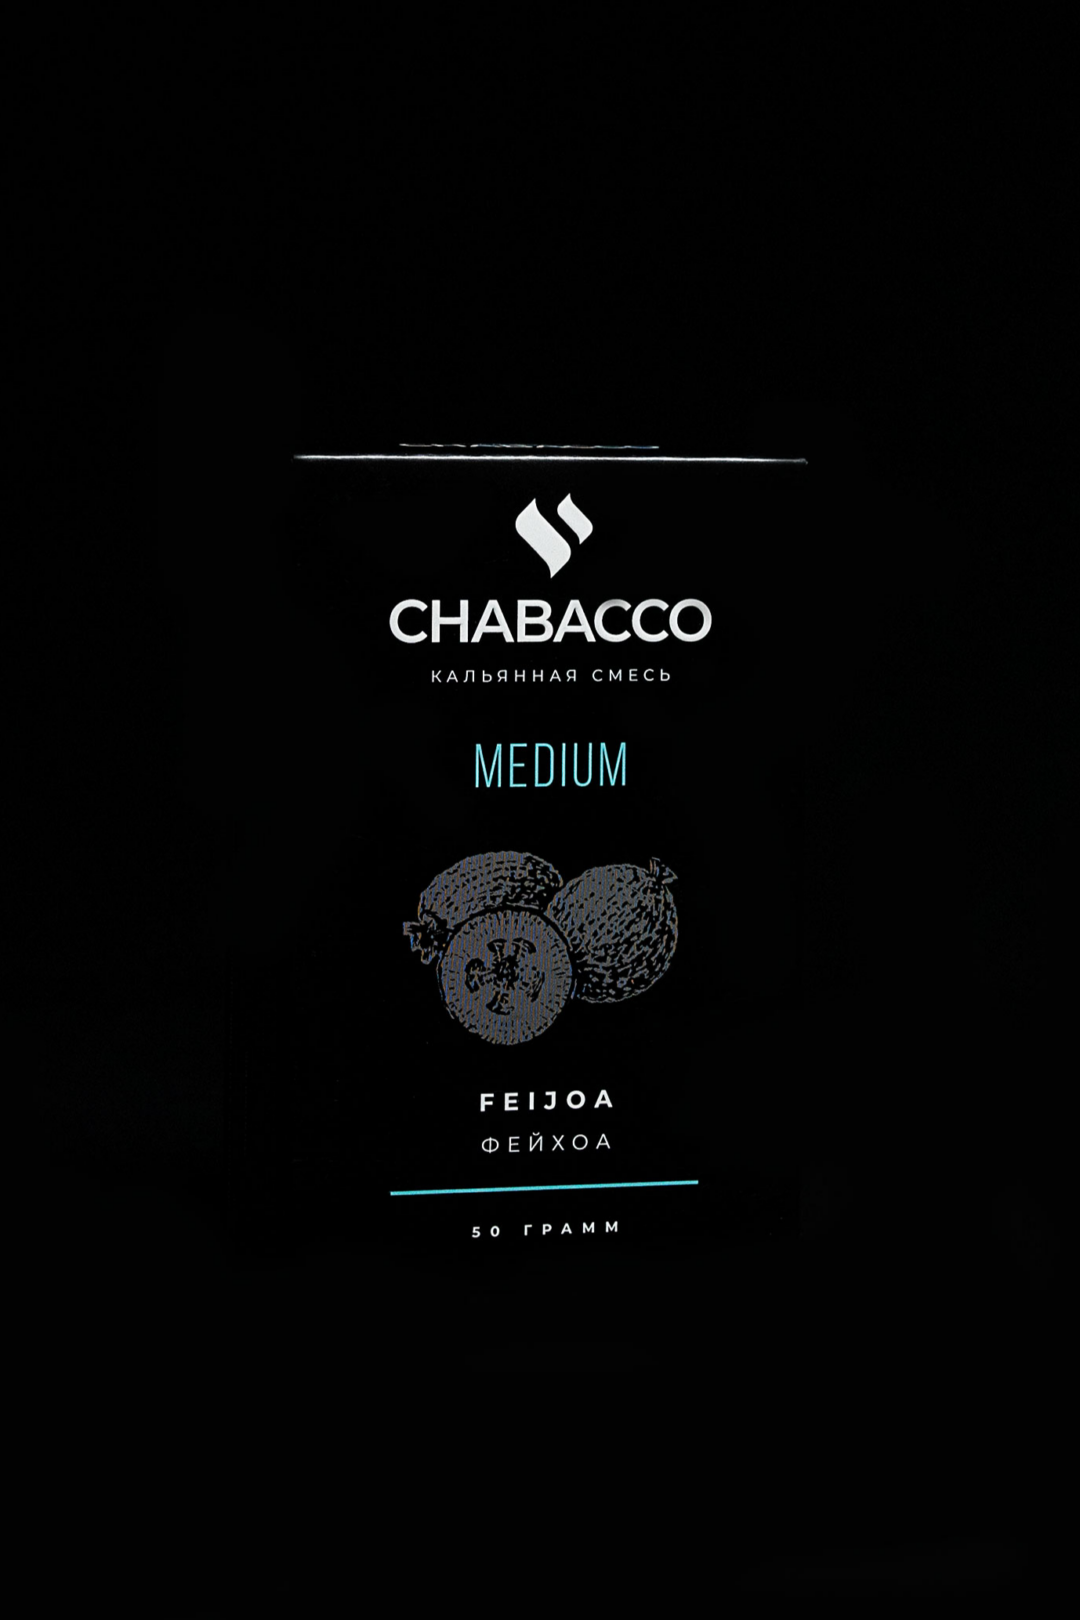 Chabacco Medium FEIJOA ( Feyxoa )